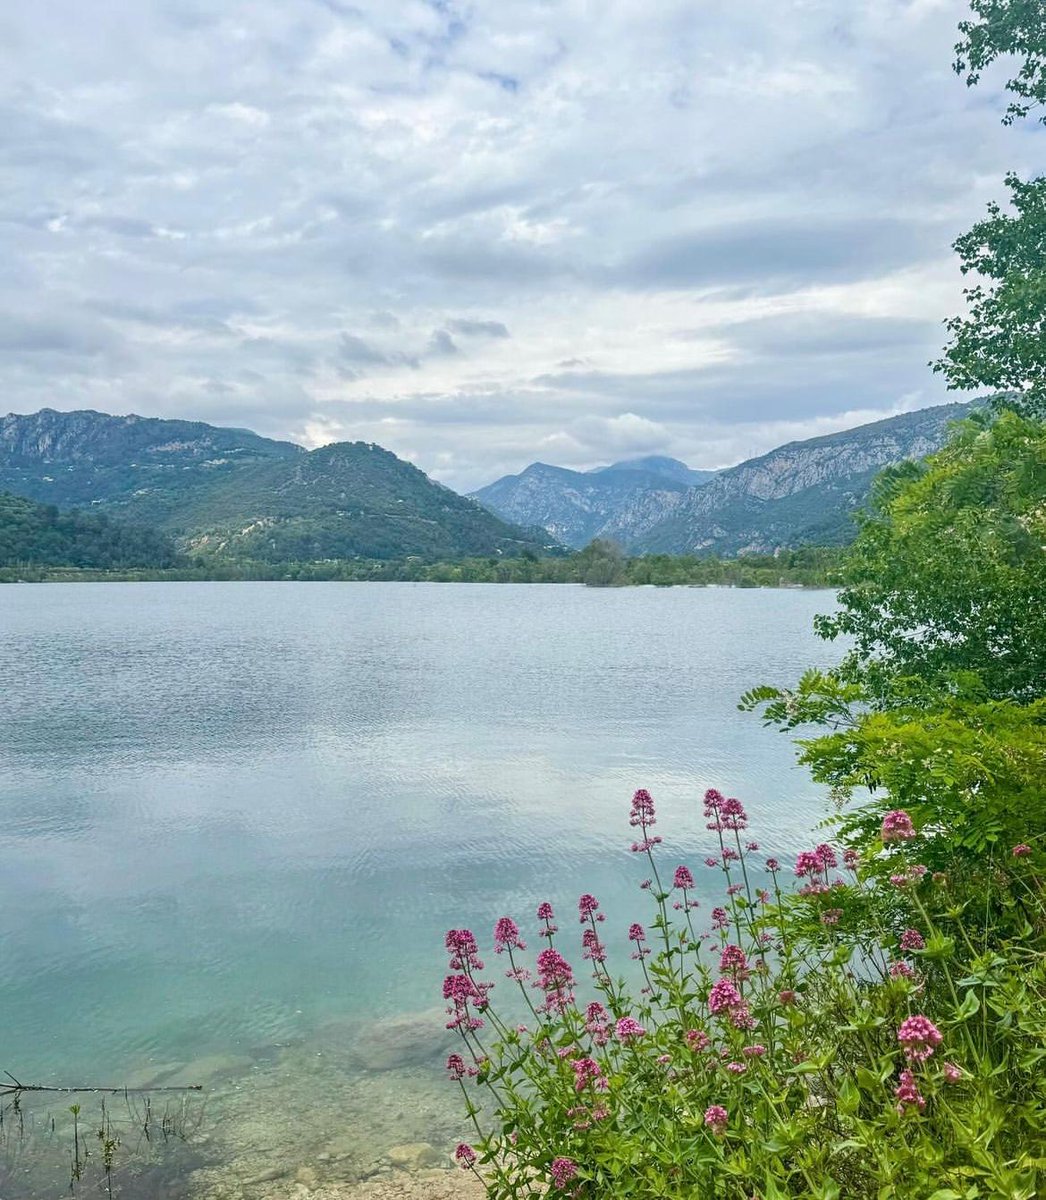 (Re)Découvrez chaque jour le #Département06 en photo ! Partagez vos plus beaux clichés du Département avec #AlpesMaritimes

L'équipe du Département vous souhaite une belle journée ☀️

📸 clefdureve (IG) /Lac du Broc

#CotedAzurFrance #VisitCotedAzur @VisitCotedazur